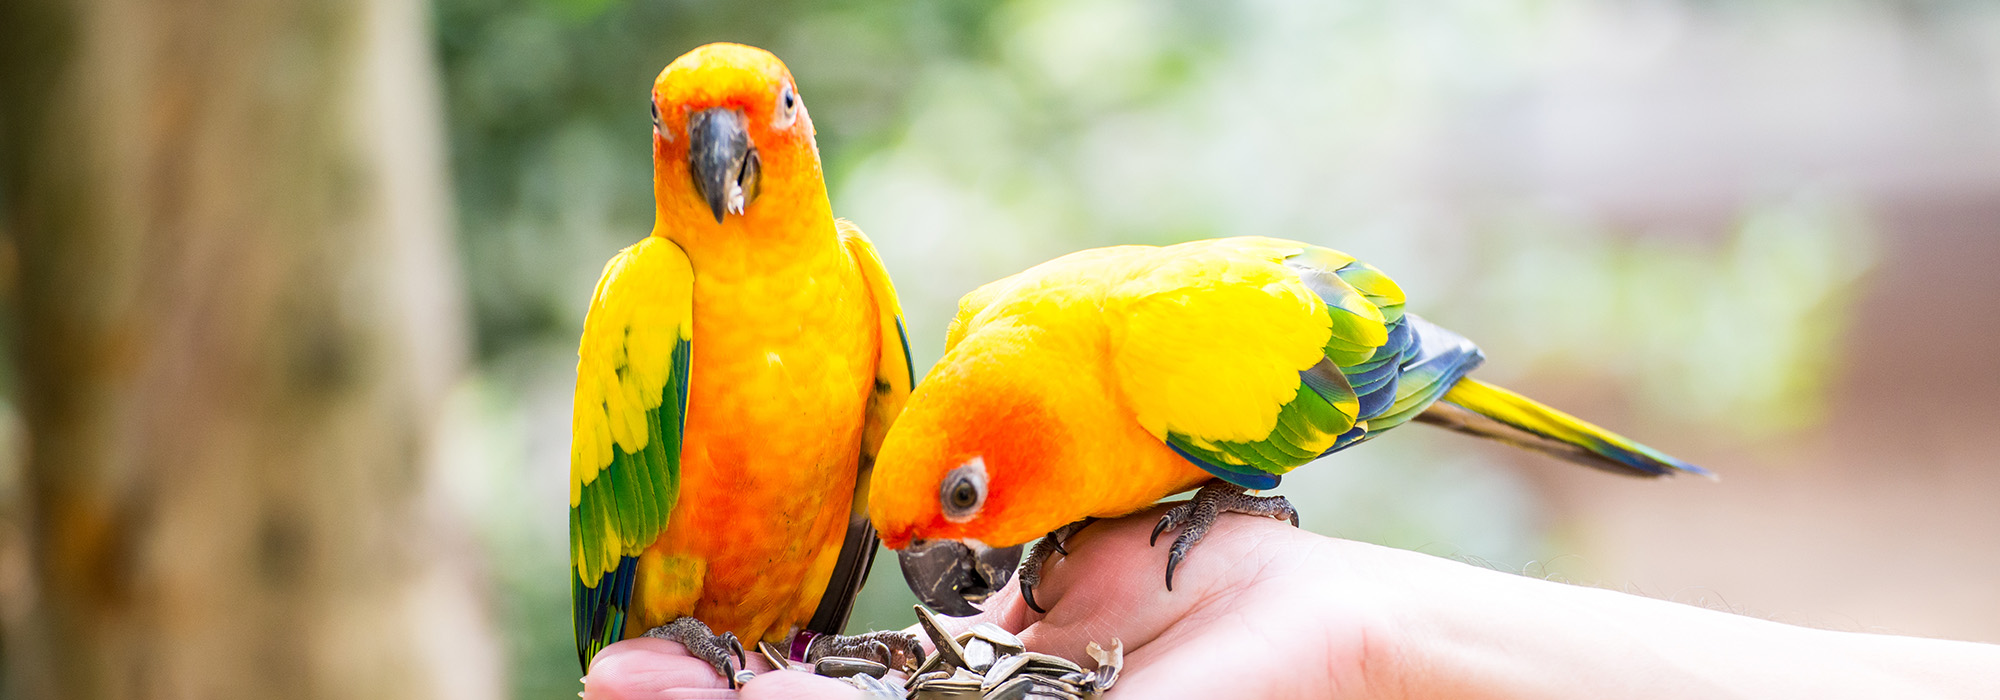 Twee felgekleurde vogels eten uit een hand